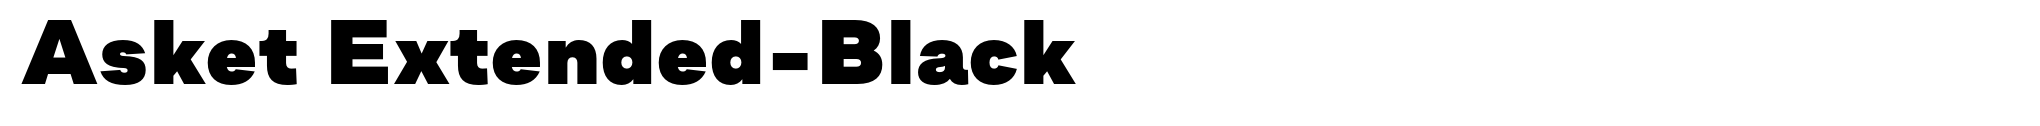 Asket Extended-Black image